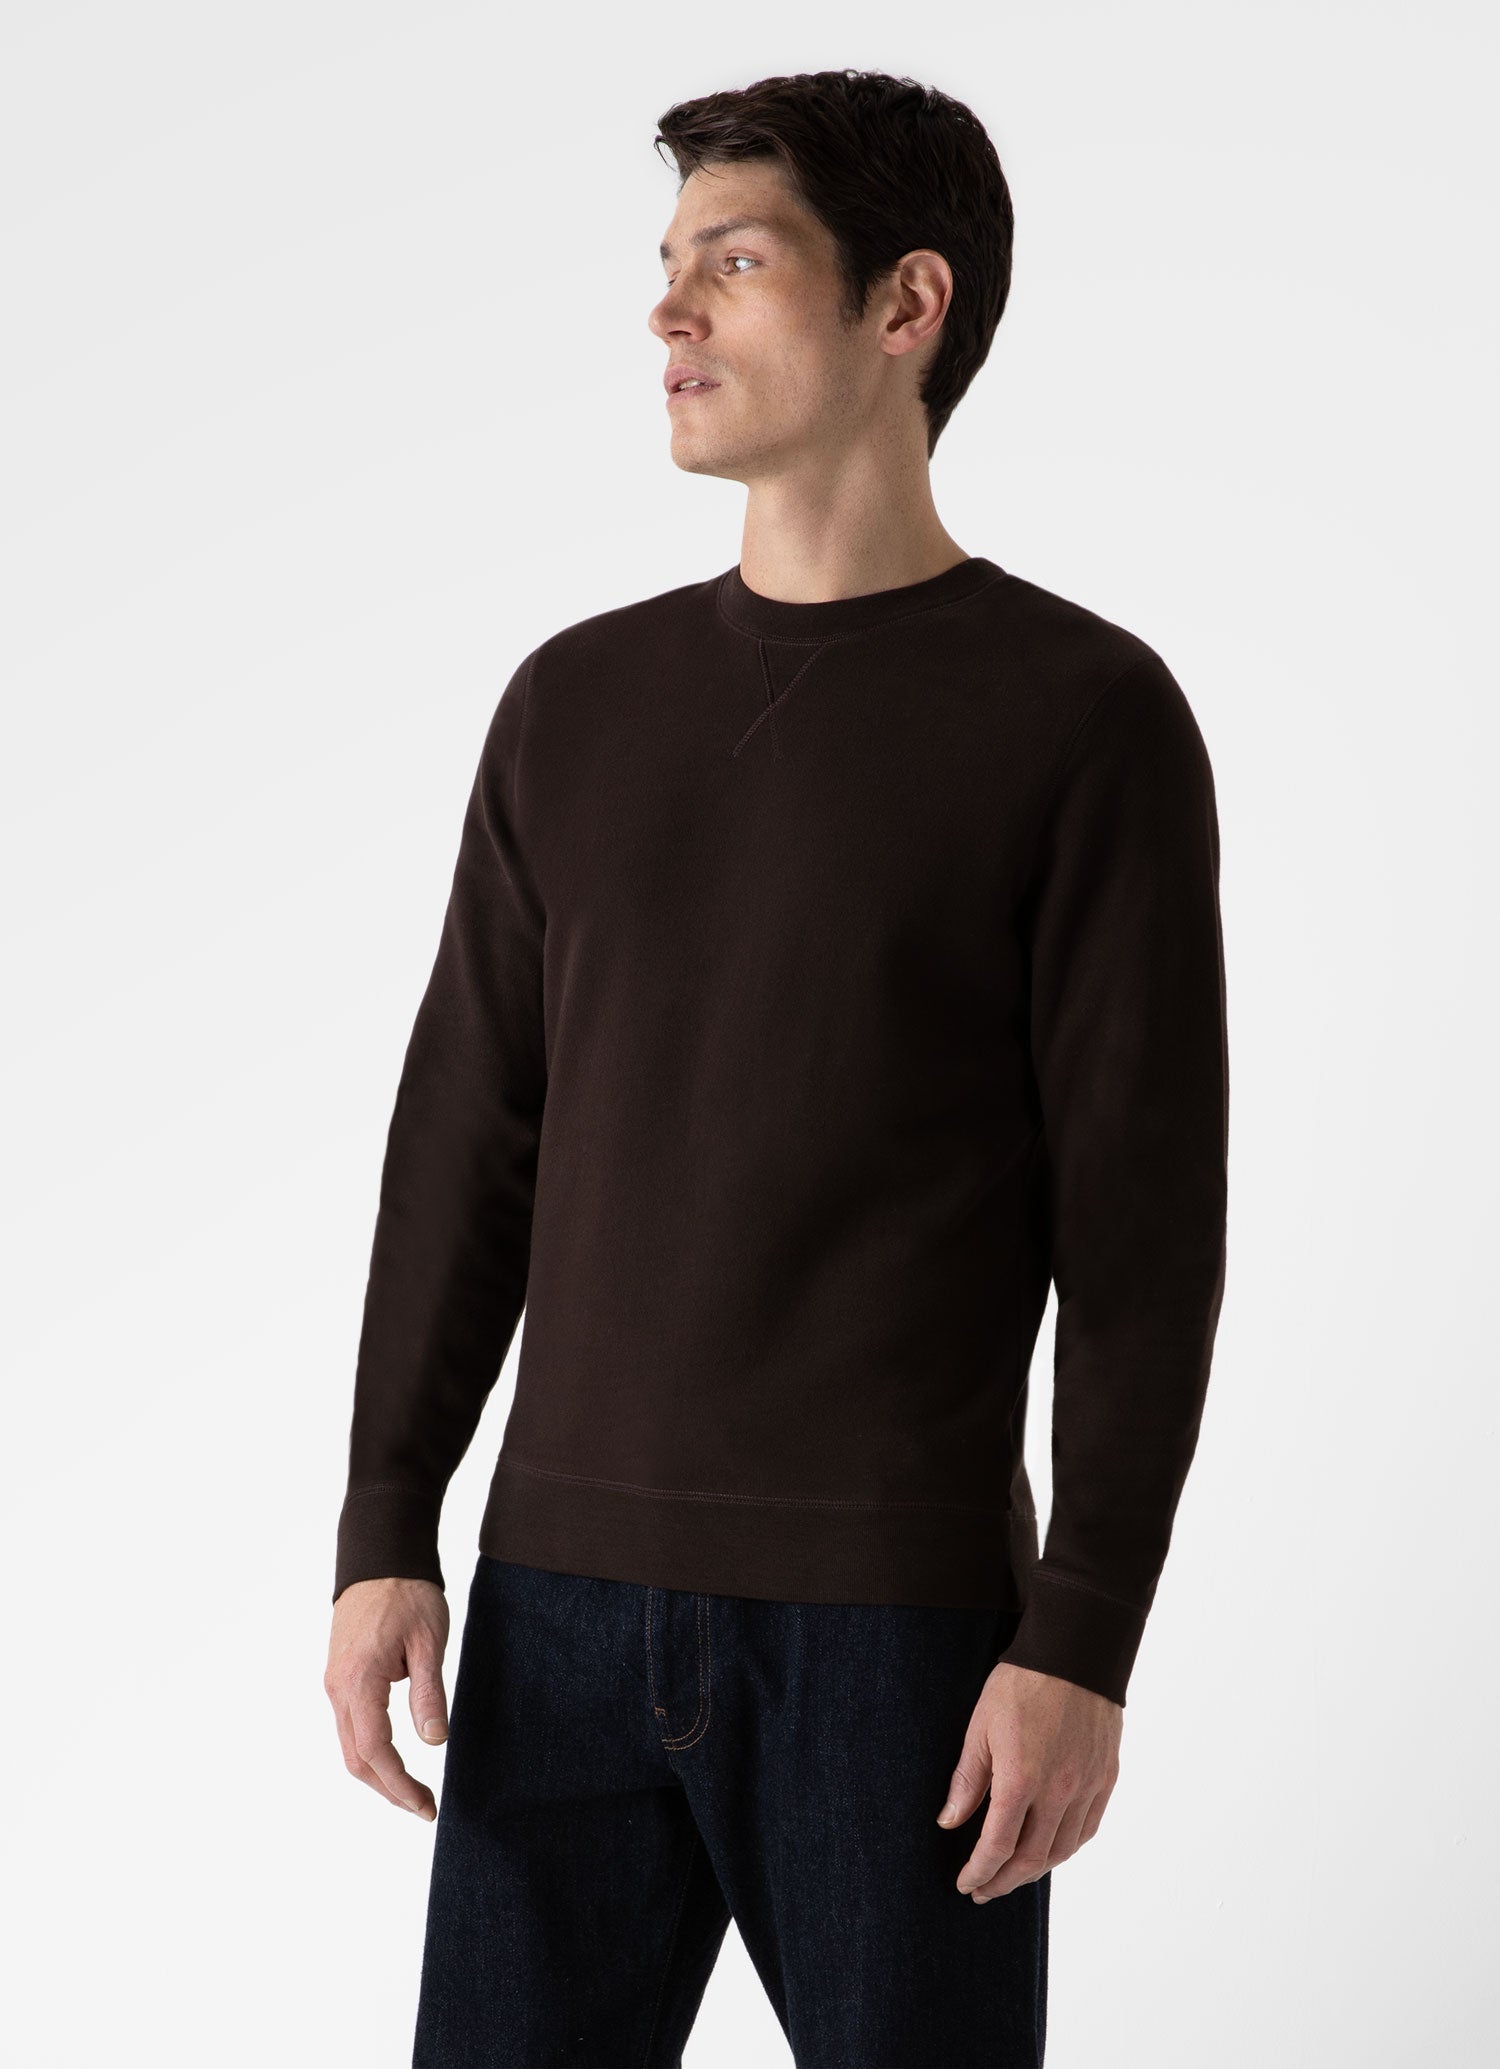 Men's Loopback Sweatshirt in Coffee